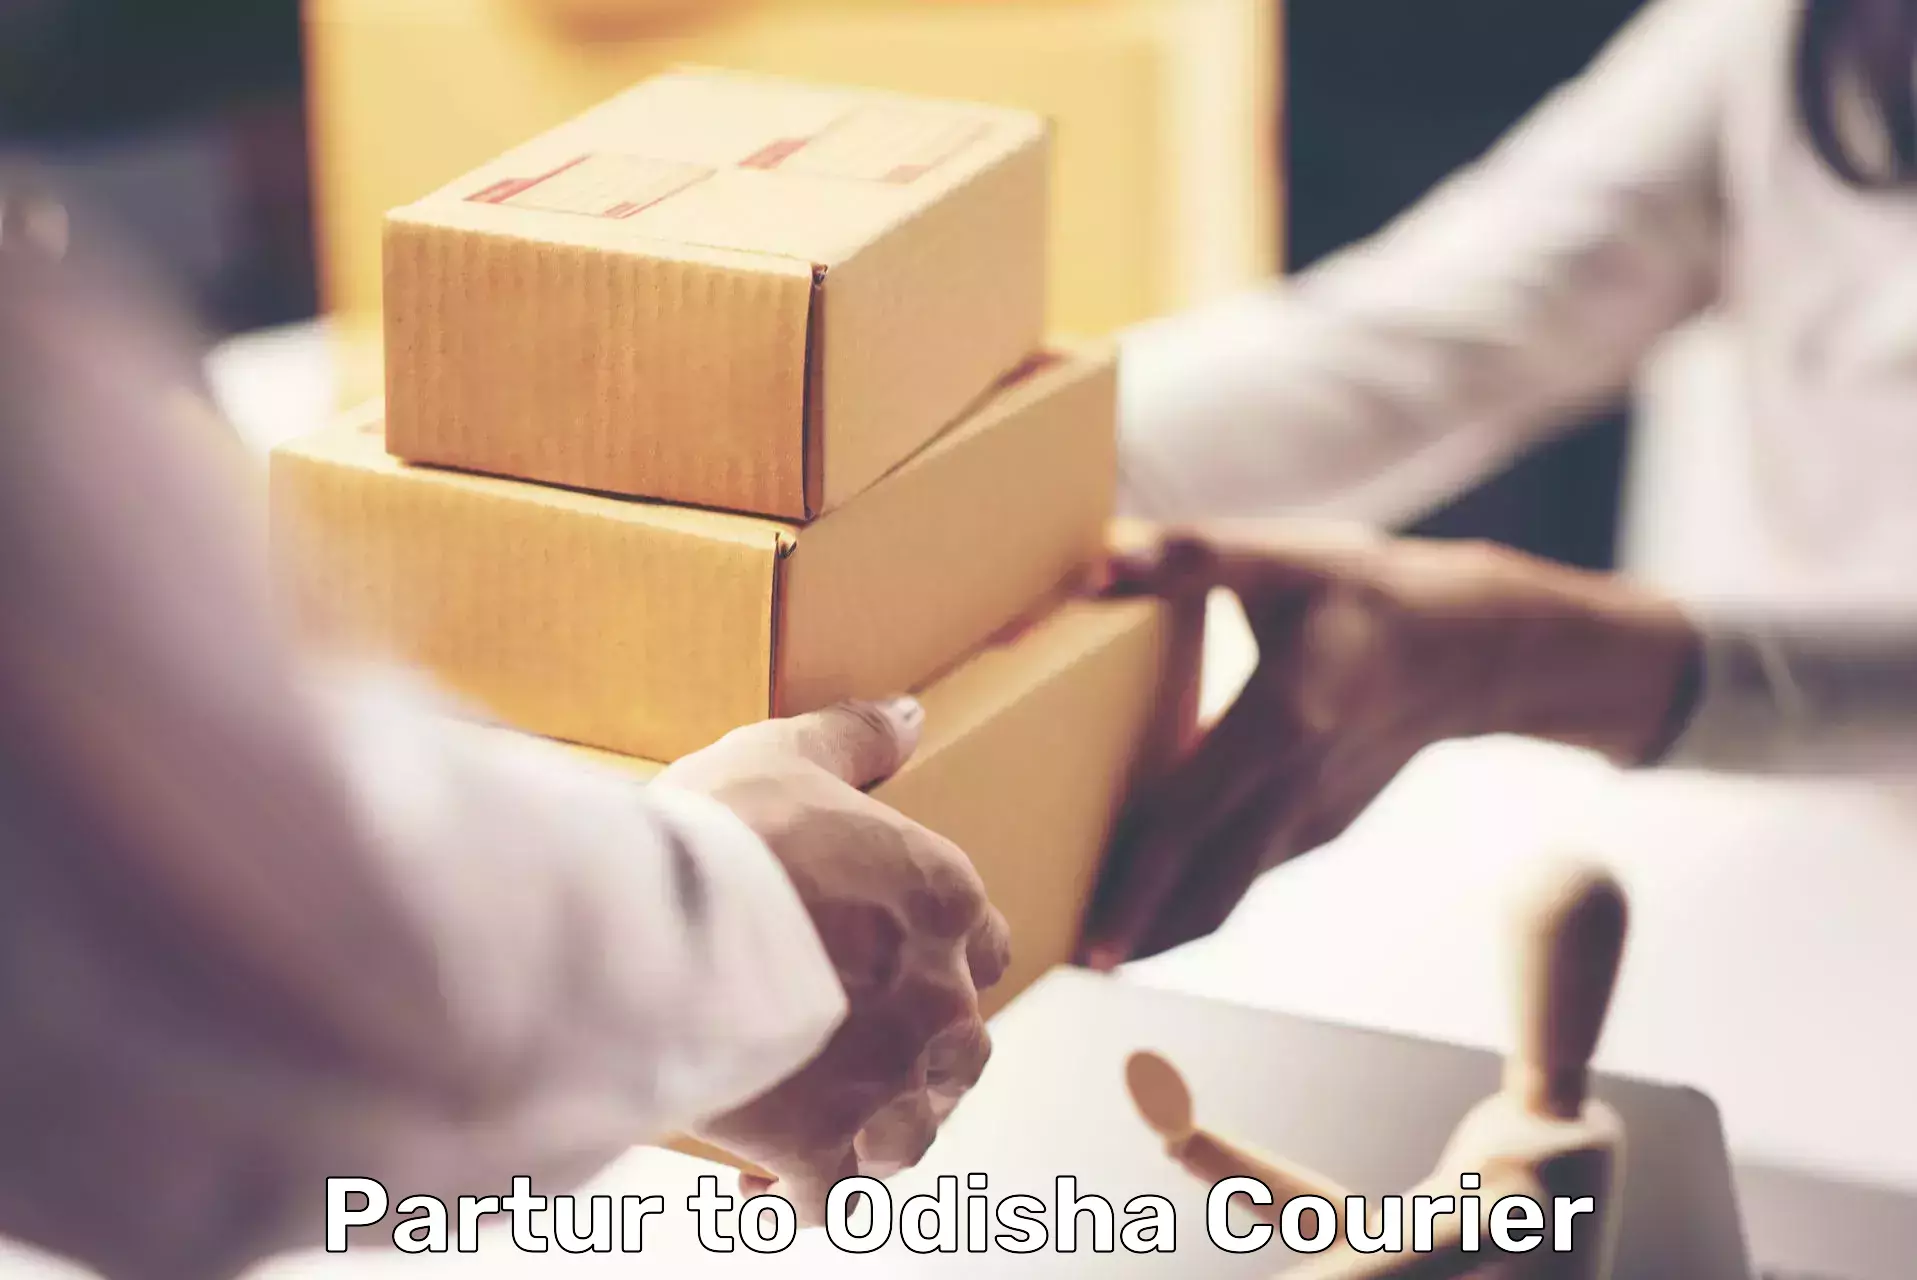 Digital courier platforms Partur to Parmanpur